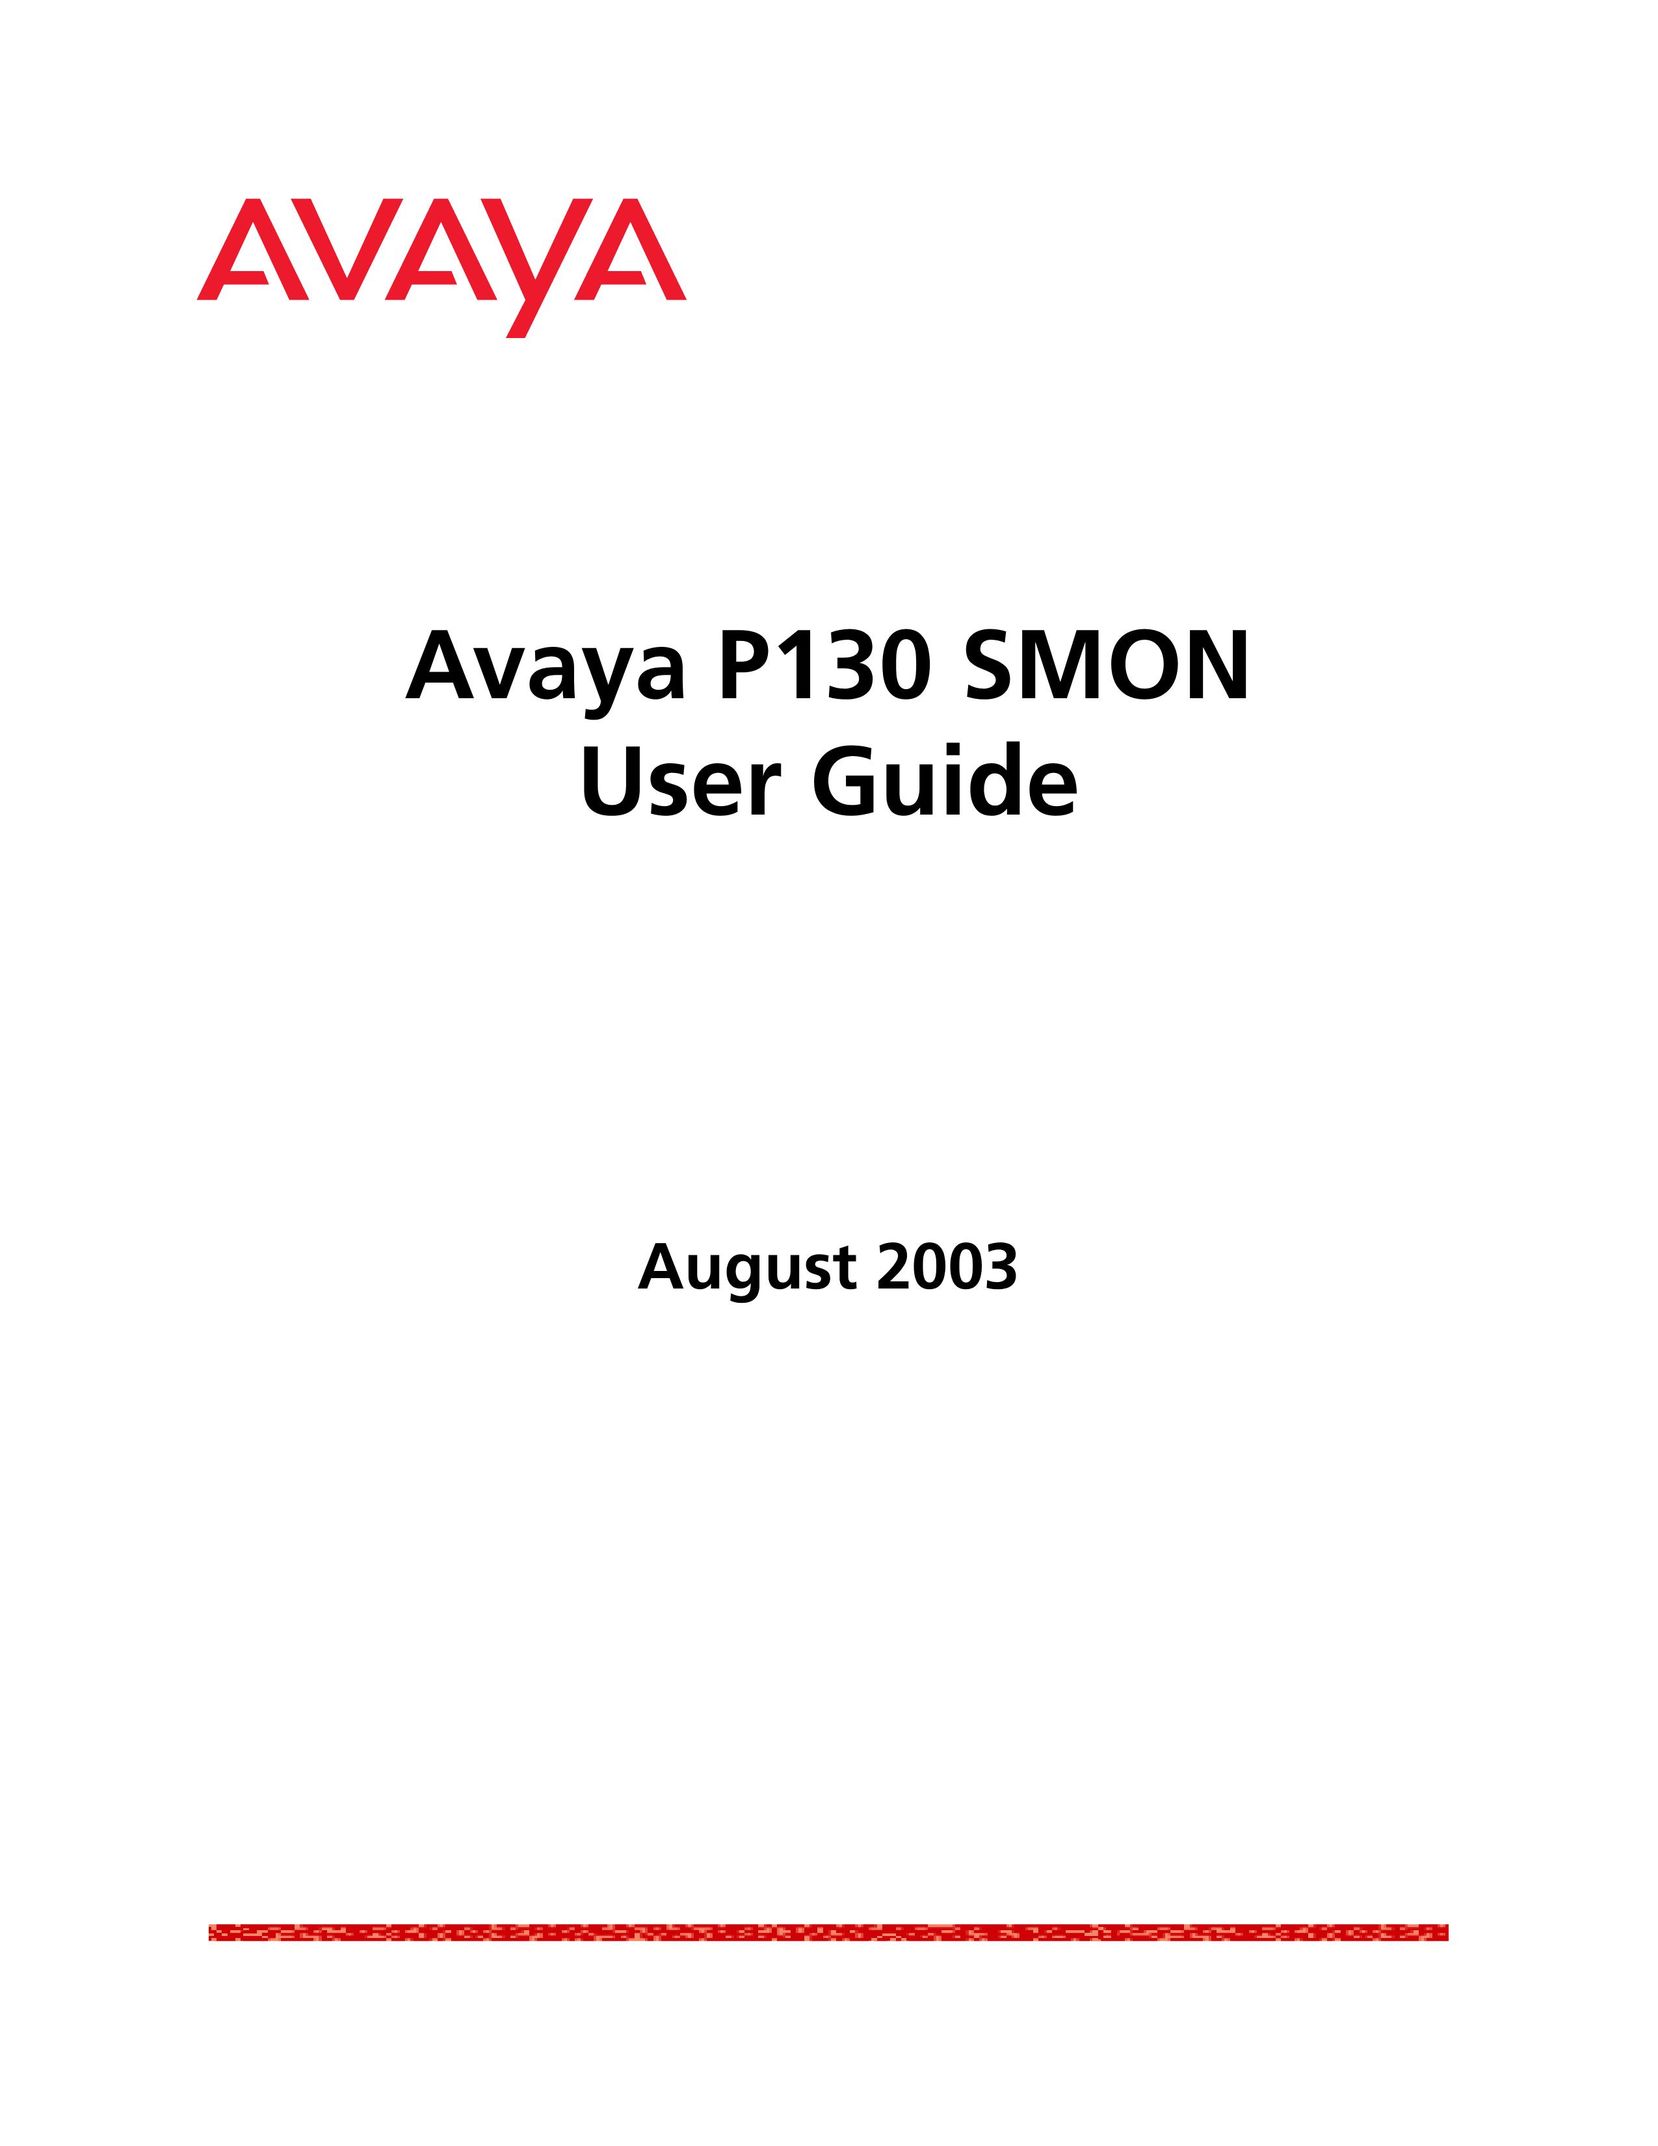 Avaya P130 SMON Switch User Manual